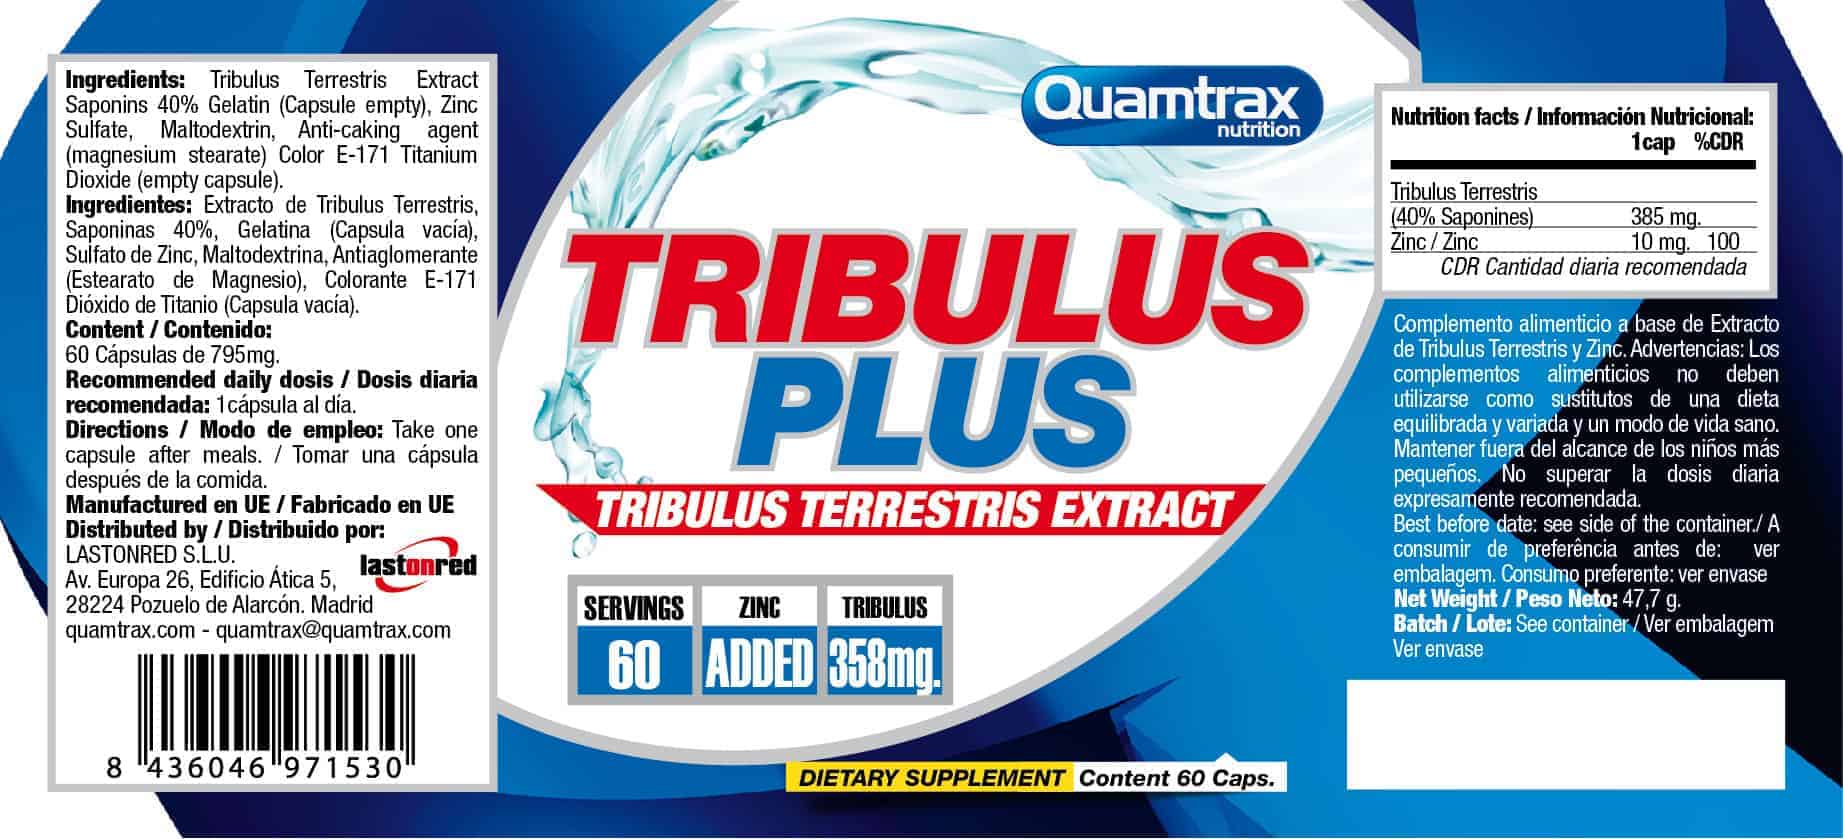 Quamtrax-Tribulus-Plus-Nutrition-Label-60-capsules